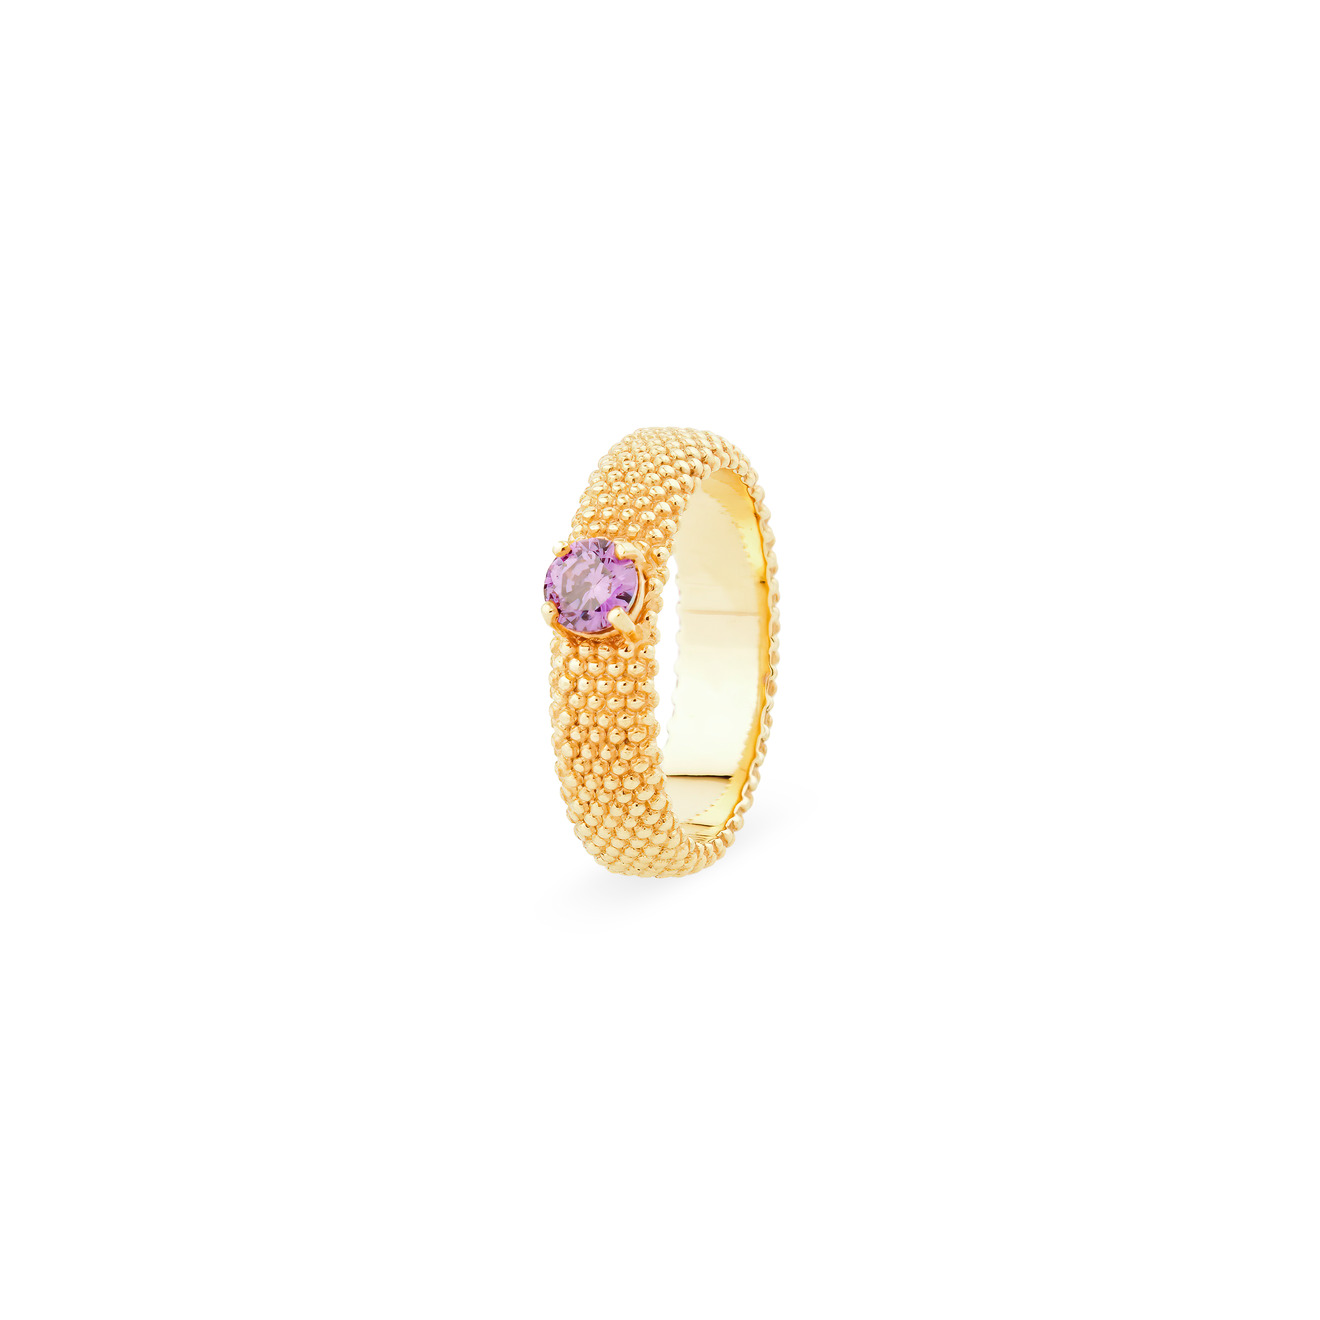 KRASHE jewellery Позолоченное кольцо «Золотые мурашки» с фиолетовым фианитом krashe jewellery позолоченные серьги loosing my religion